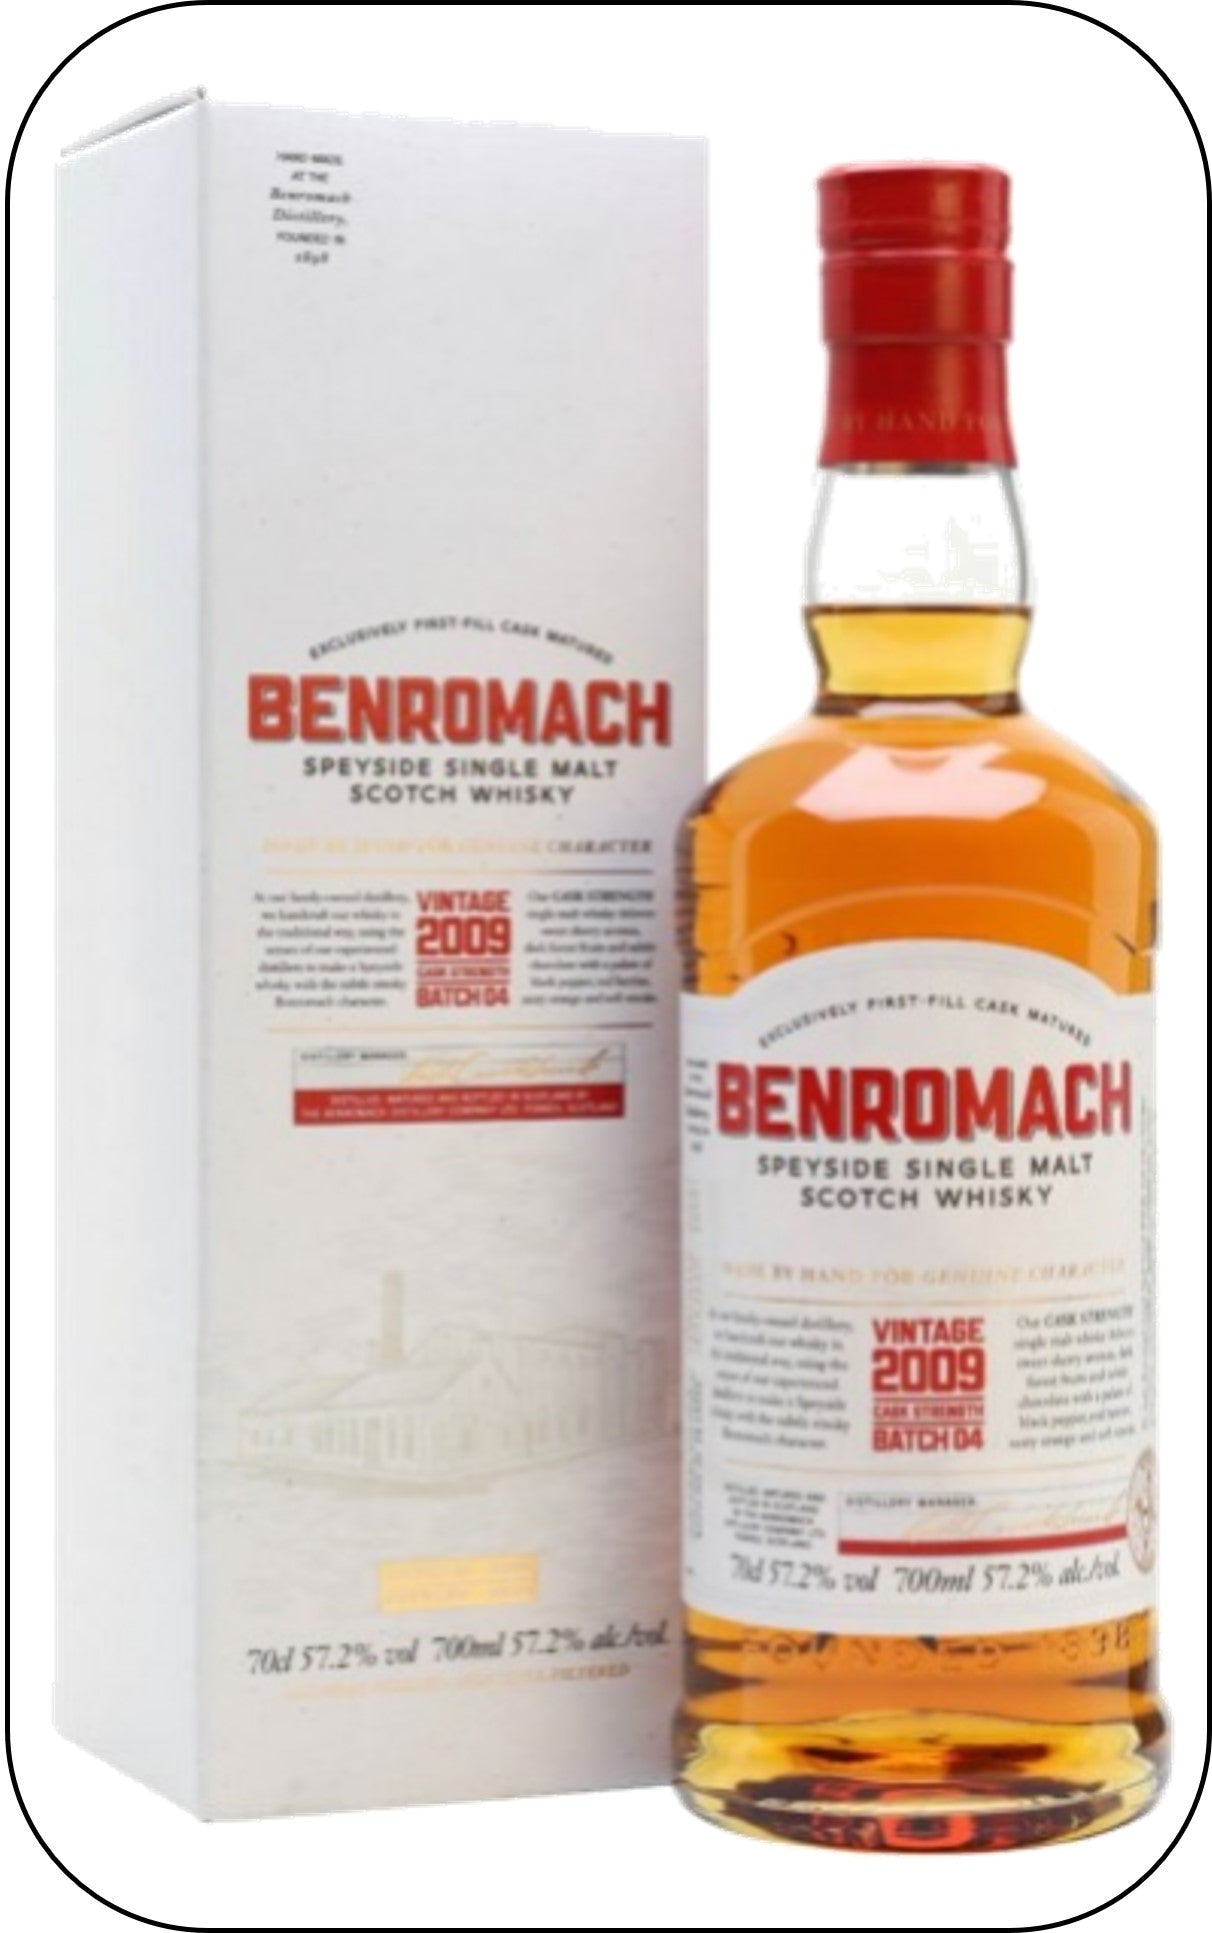 Benromach Vintage 2009 Single Malt - CASK STRENGTH - Batch 04 - 57.2% abv